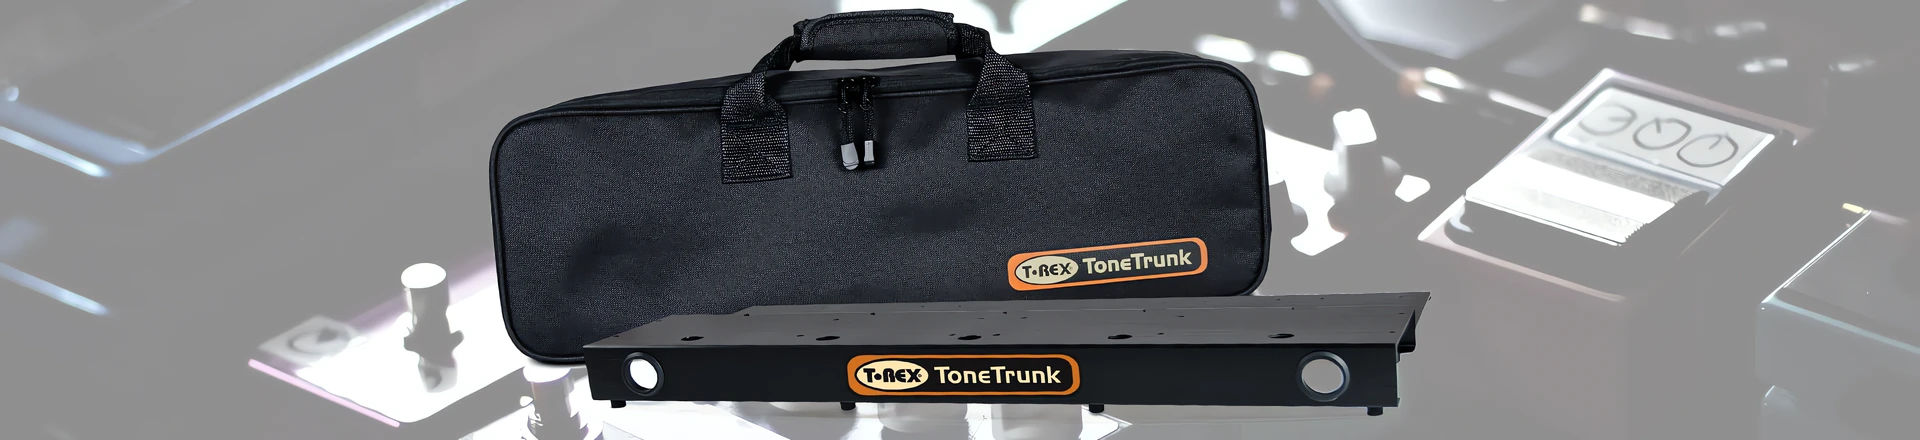 Tone Trunk -  Utwardzane pokrowce z pedalboardem od T-Rex